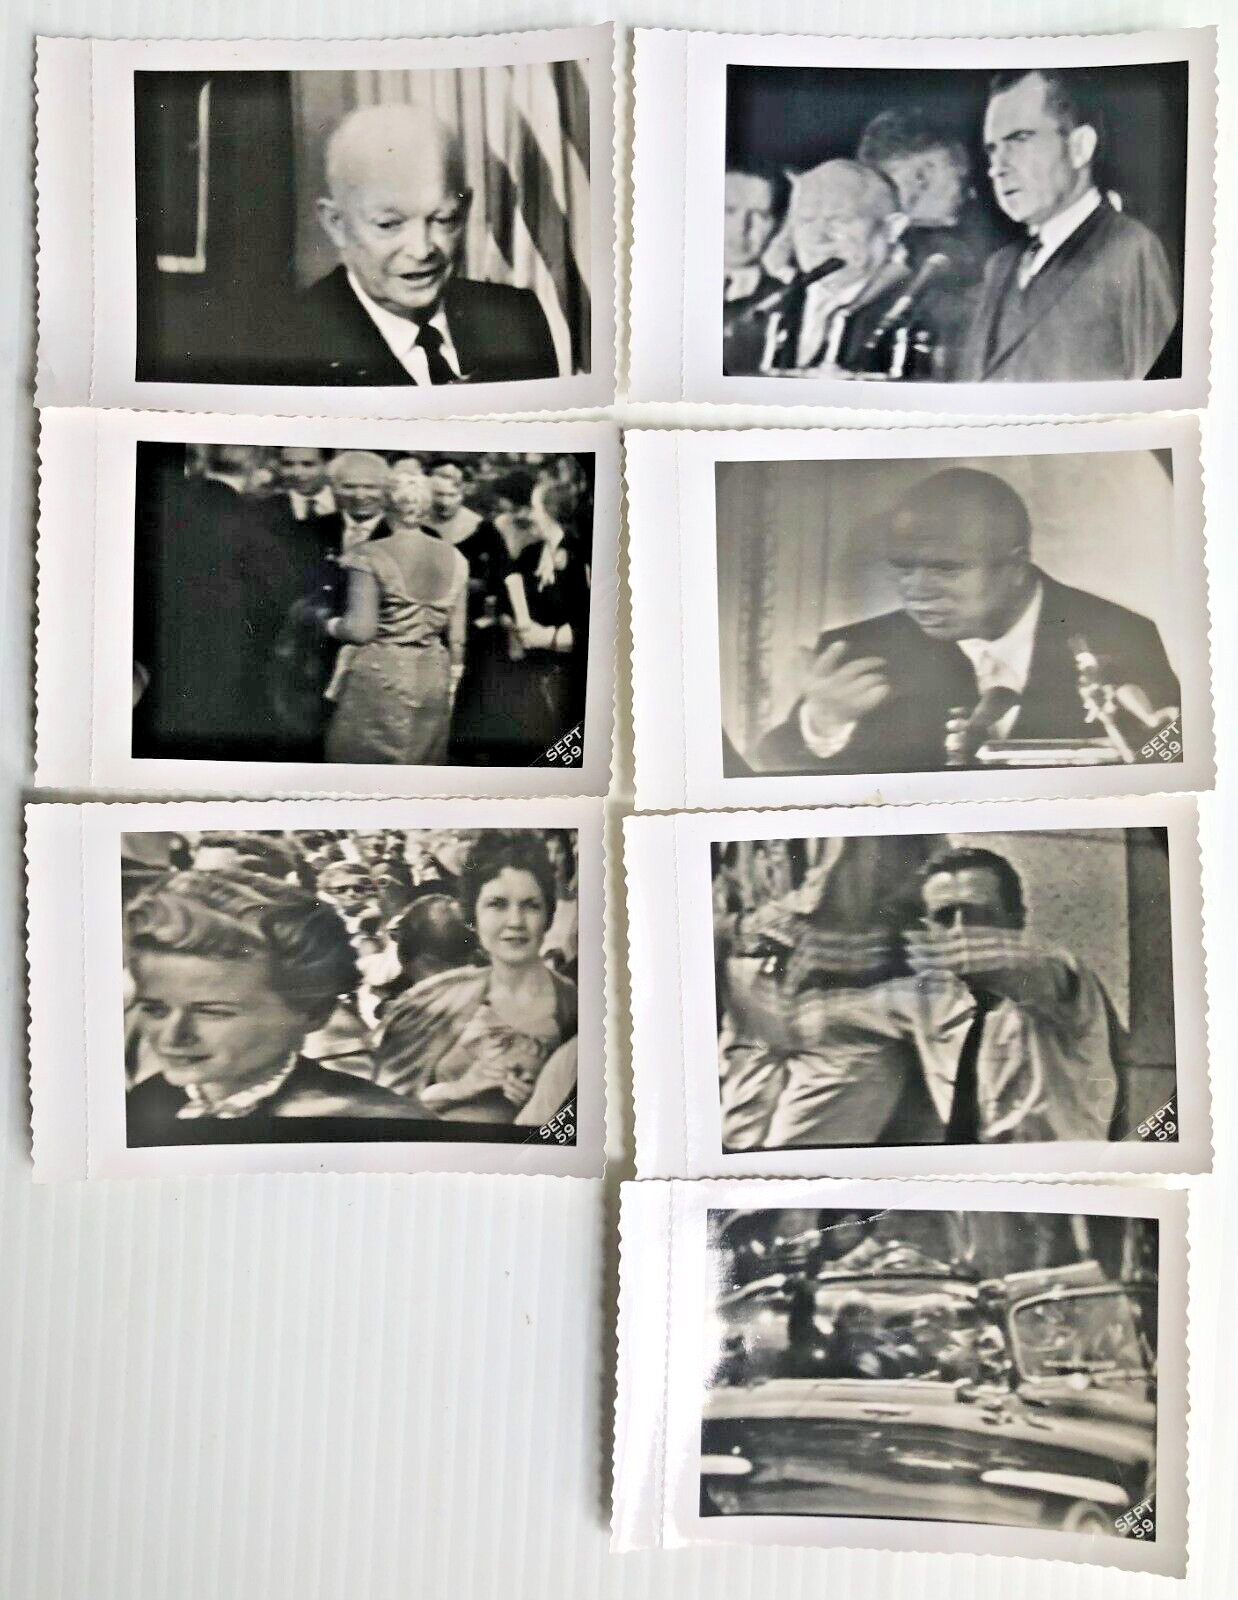 Nikita KHRUSHCHEV Sept. 1959 US visit PHOTOGRAPHS taken from TV Eisenhower Nixon